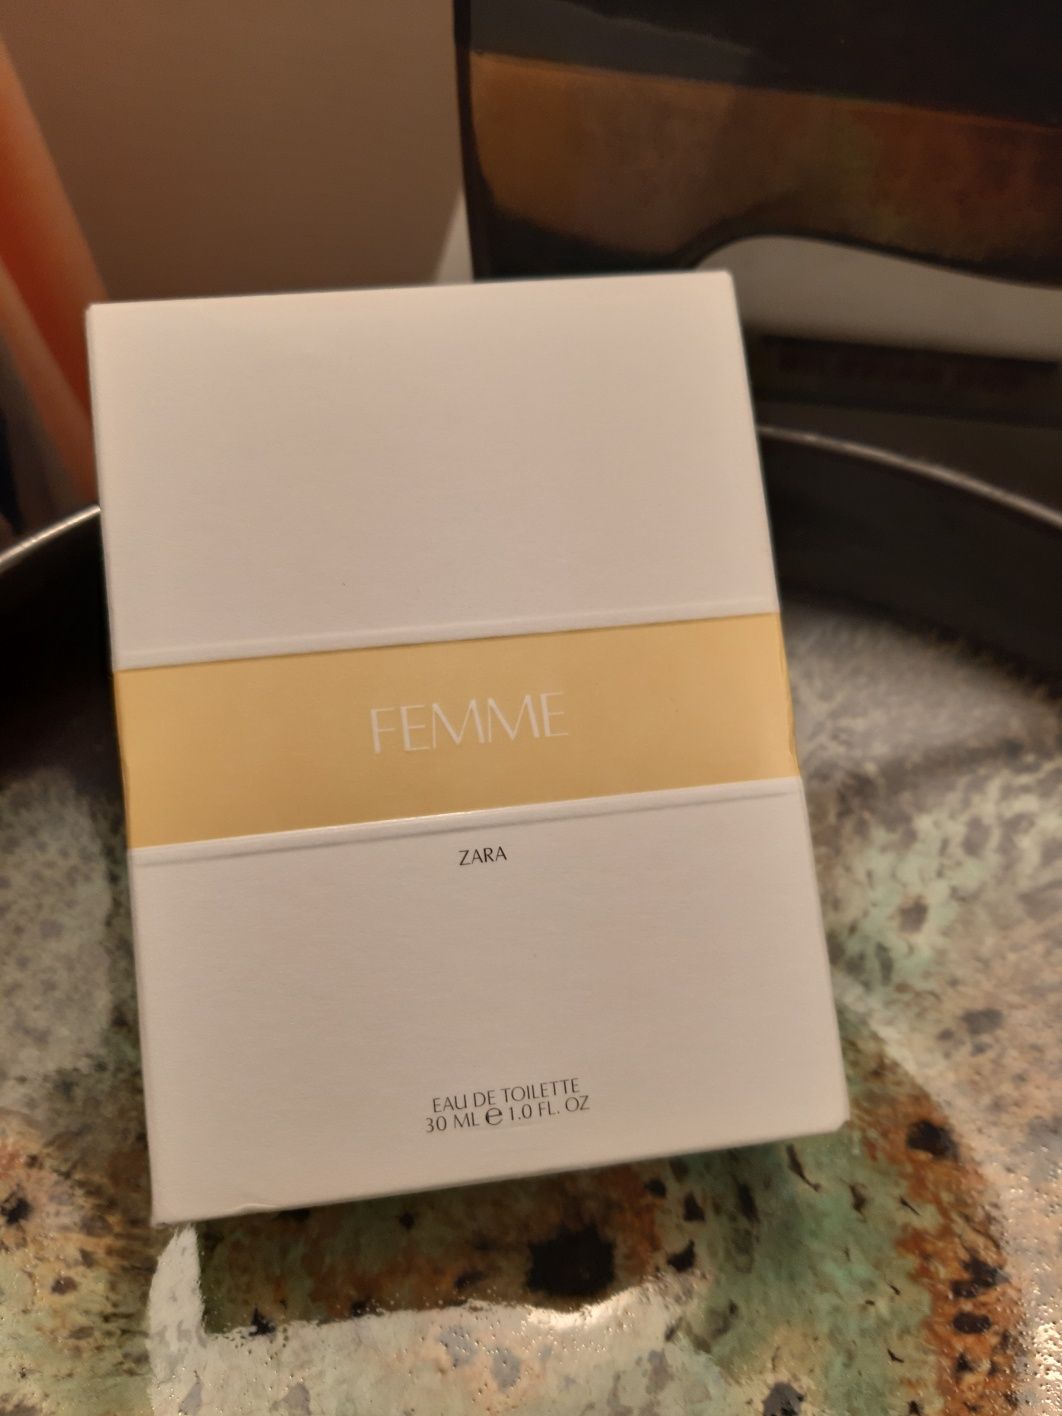 Femme zara 30ml woda toaletowa kolekcja damska zapach mała zara woda